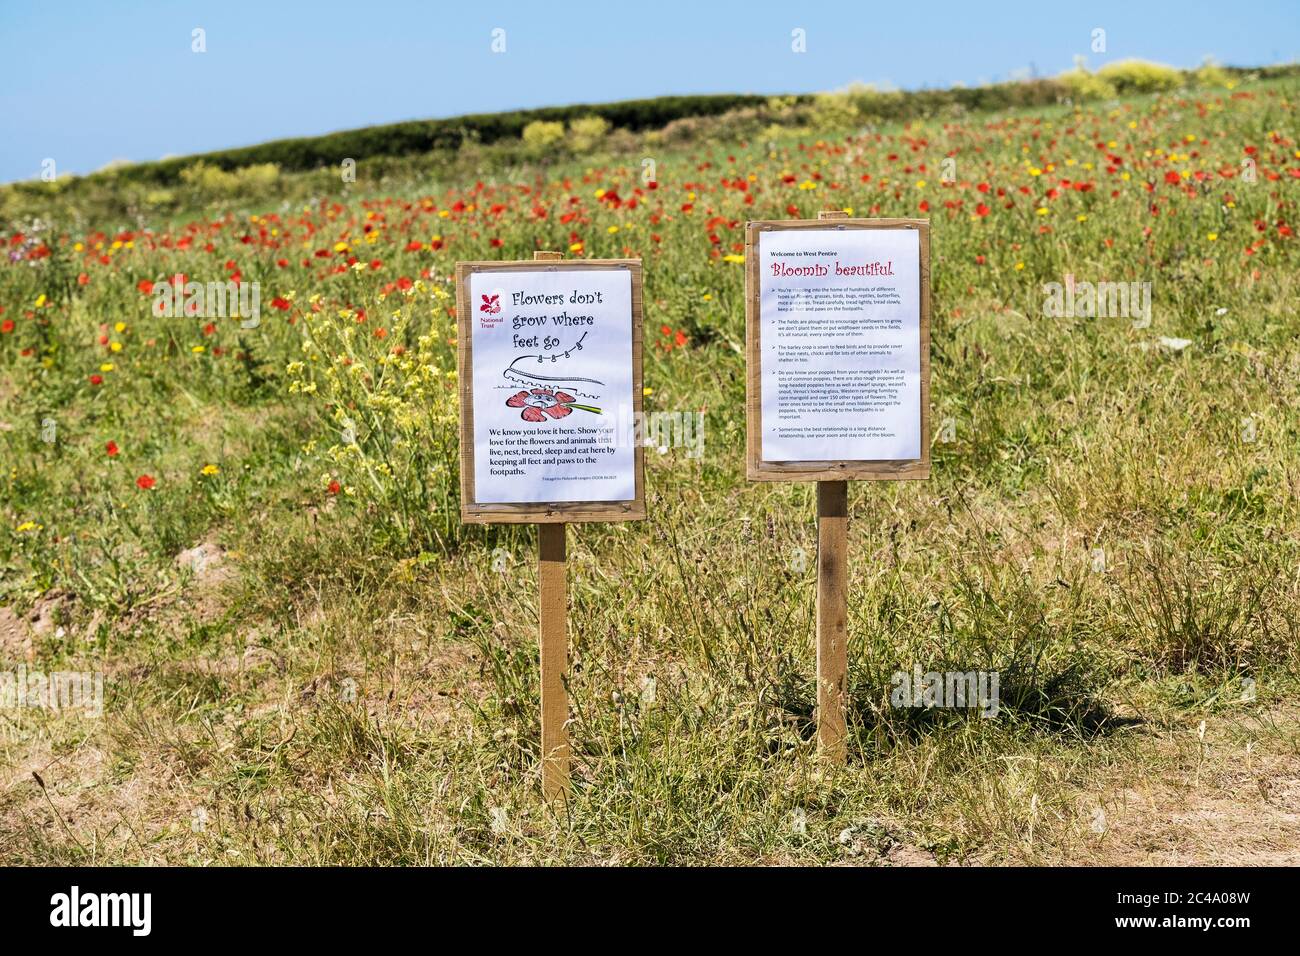 Panneaux d'information sur le bord d'un champ rempli de fleurs sauvages dans le cadre du projet de champs arables sur la pointe Penentire Ouest à Newquay, en Cornwall. Banque D'Images